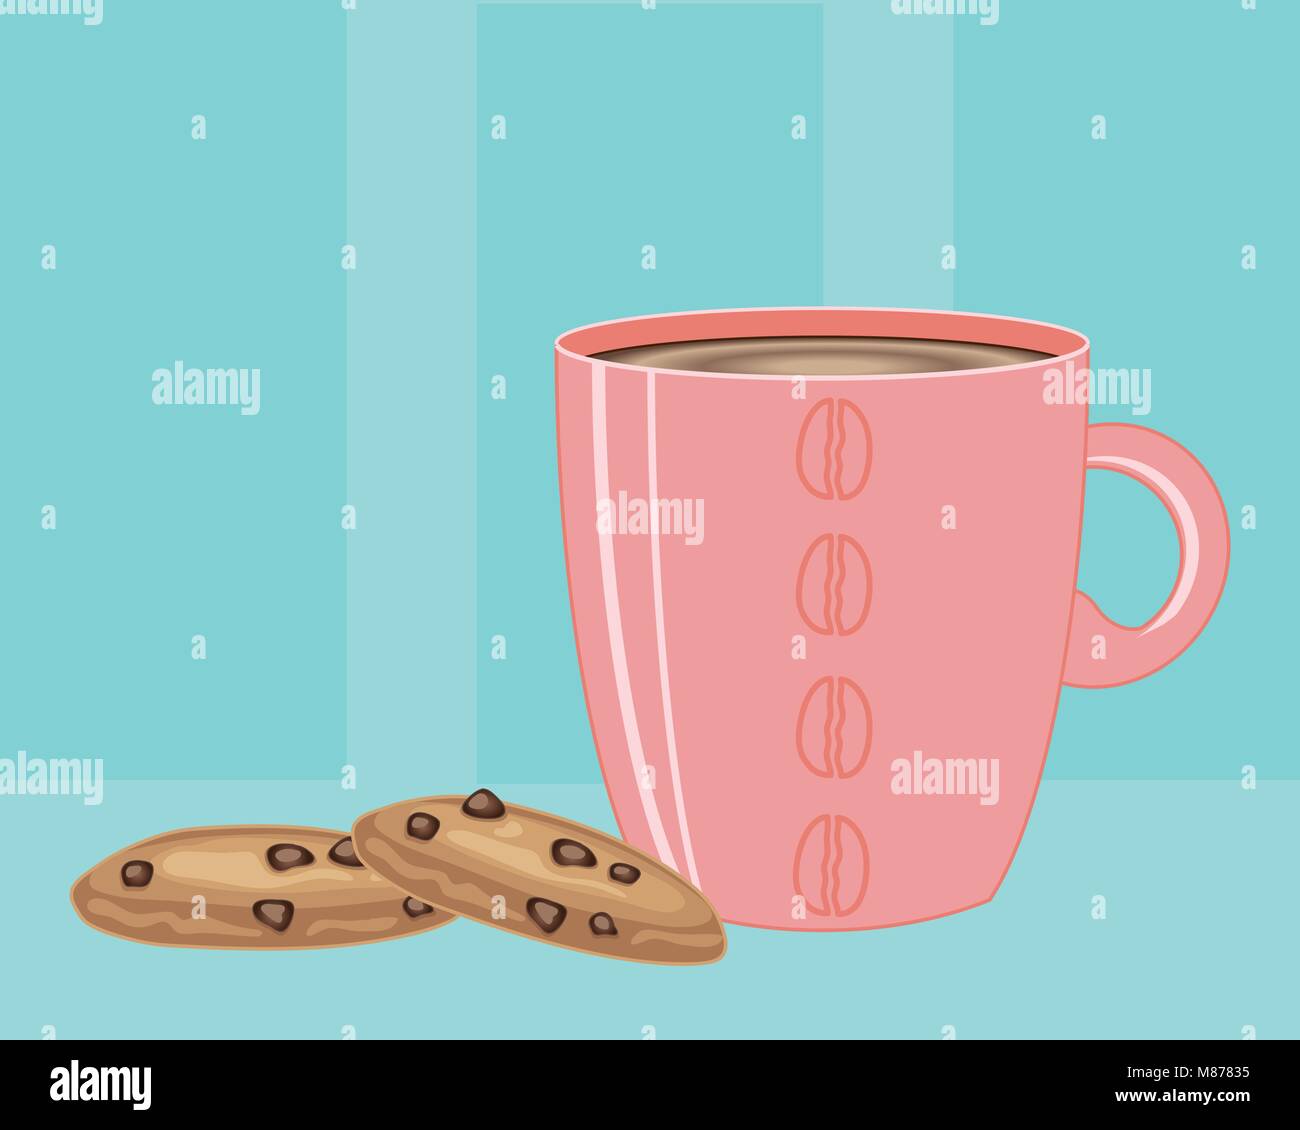 Un vecteur illustration en eps 10 format d'un mug rose pleine de café chaud et deux cookies aux pépites de chocolat sur un fond bleu vintage Illustration de Vecteur